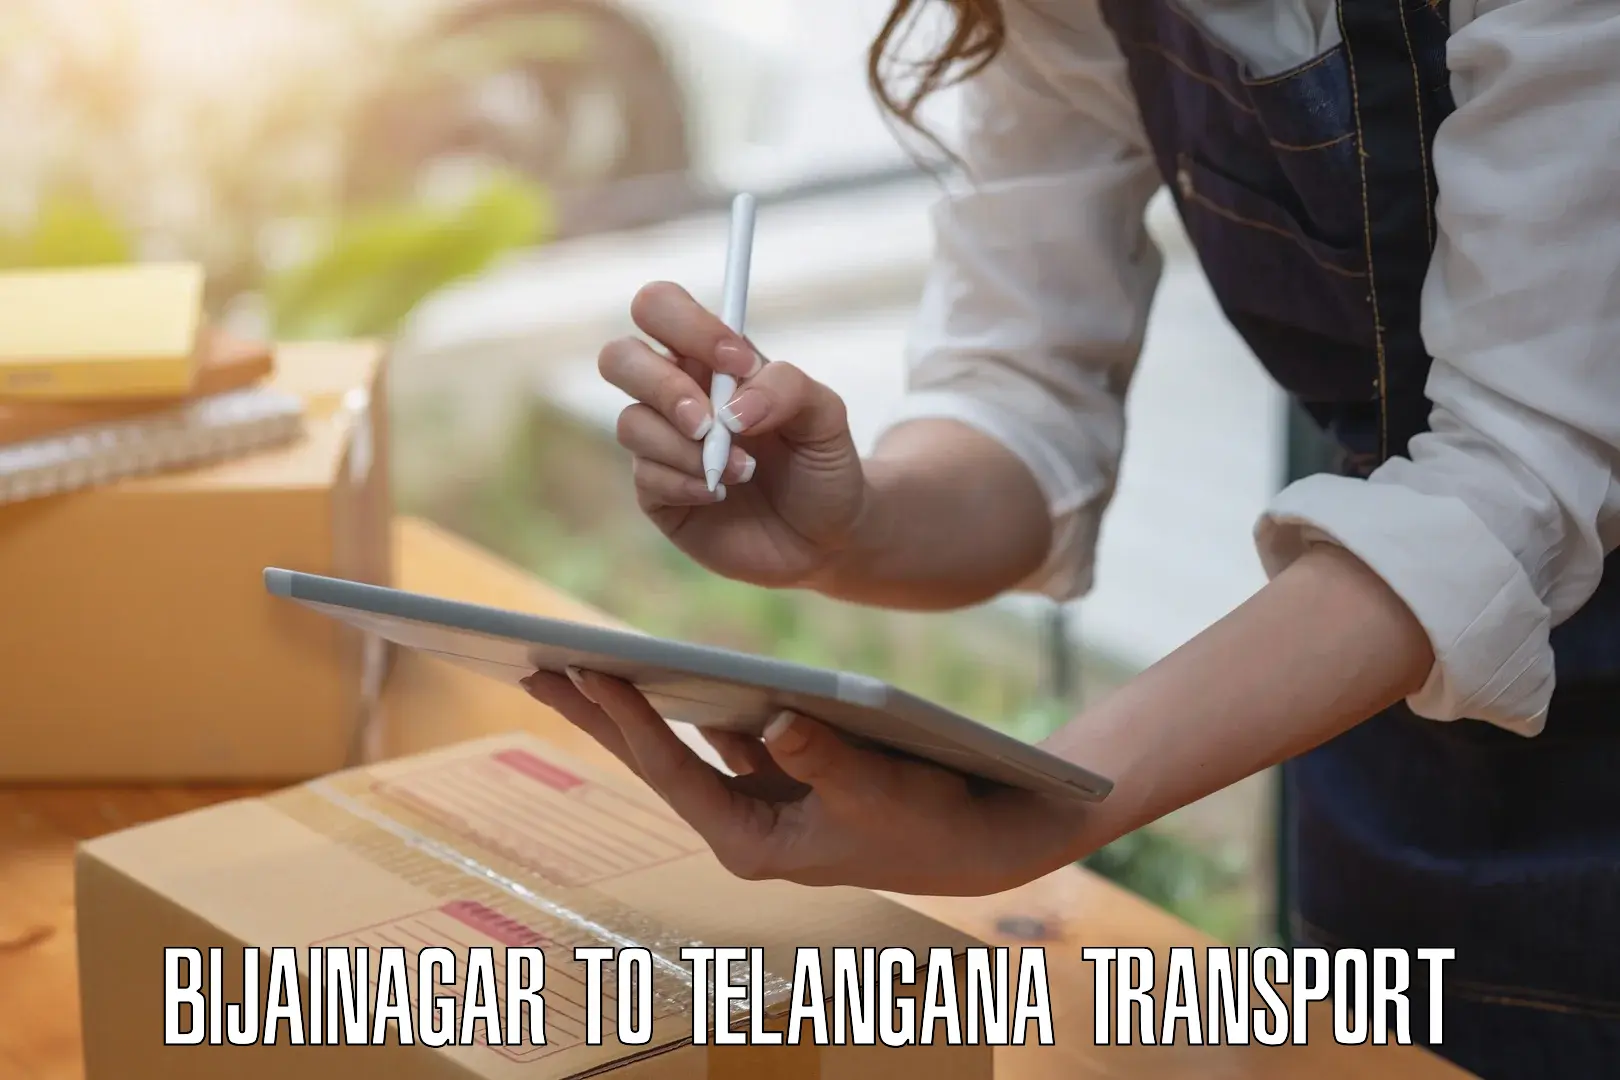 Daily transport service Bijainagar to Telangana